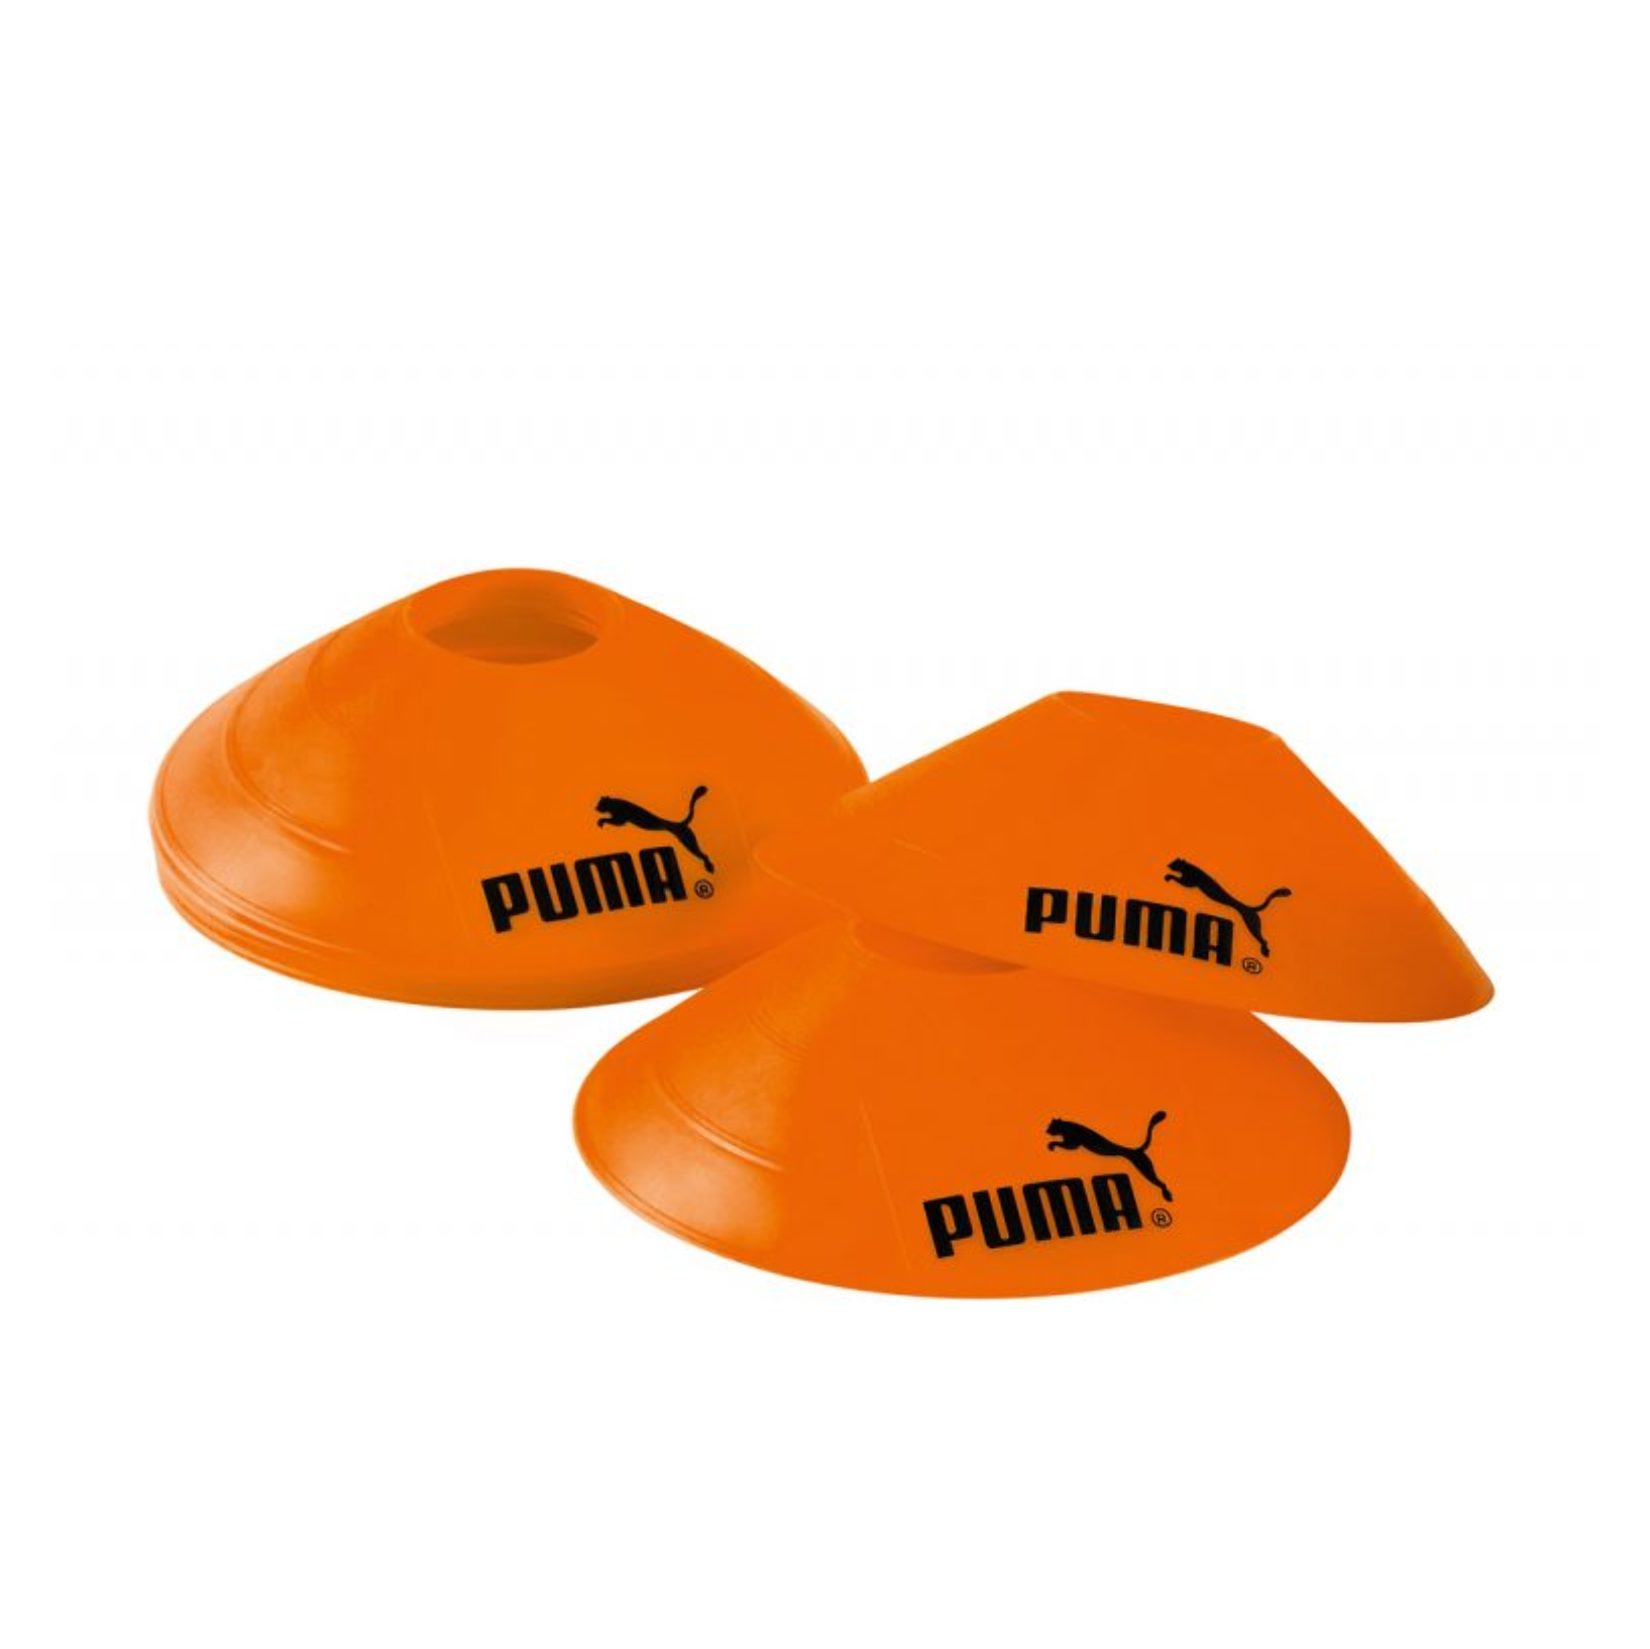 Puma Pitch Marker (10 Pack)